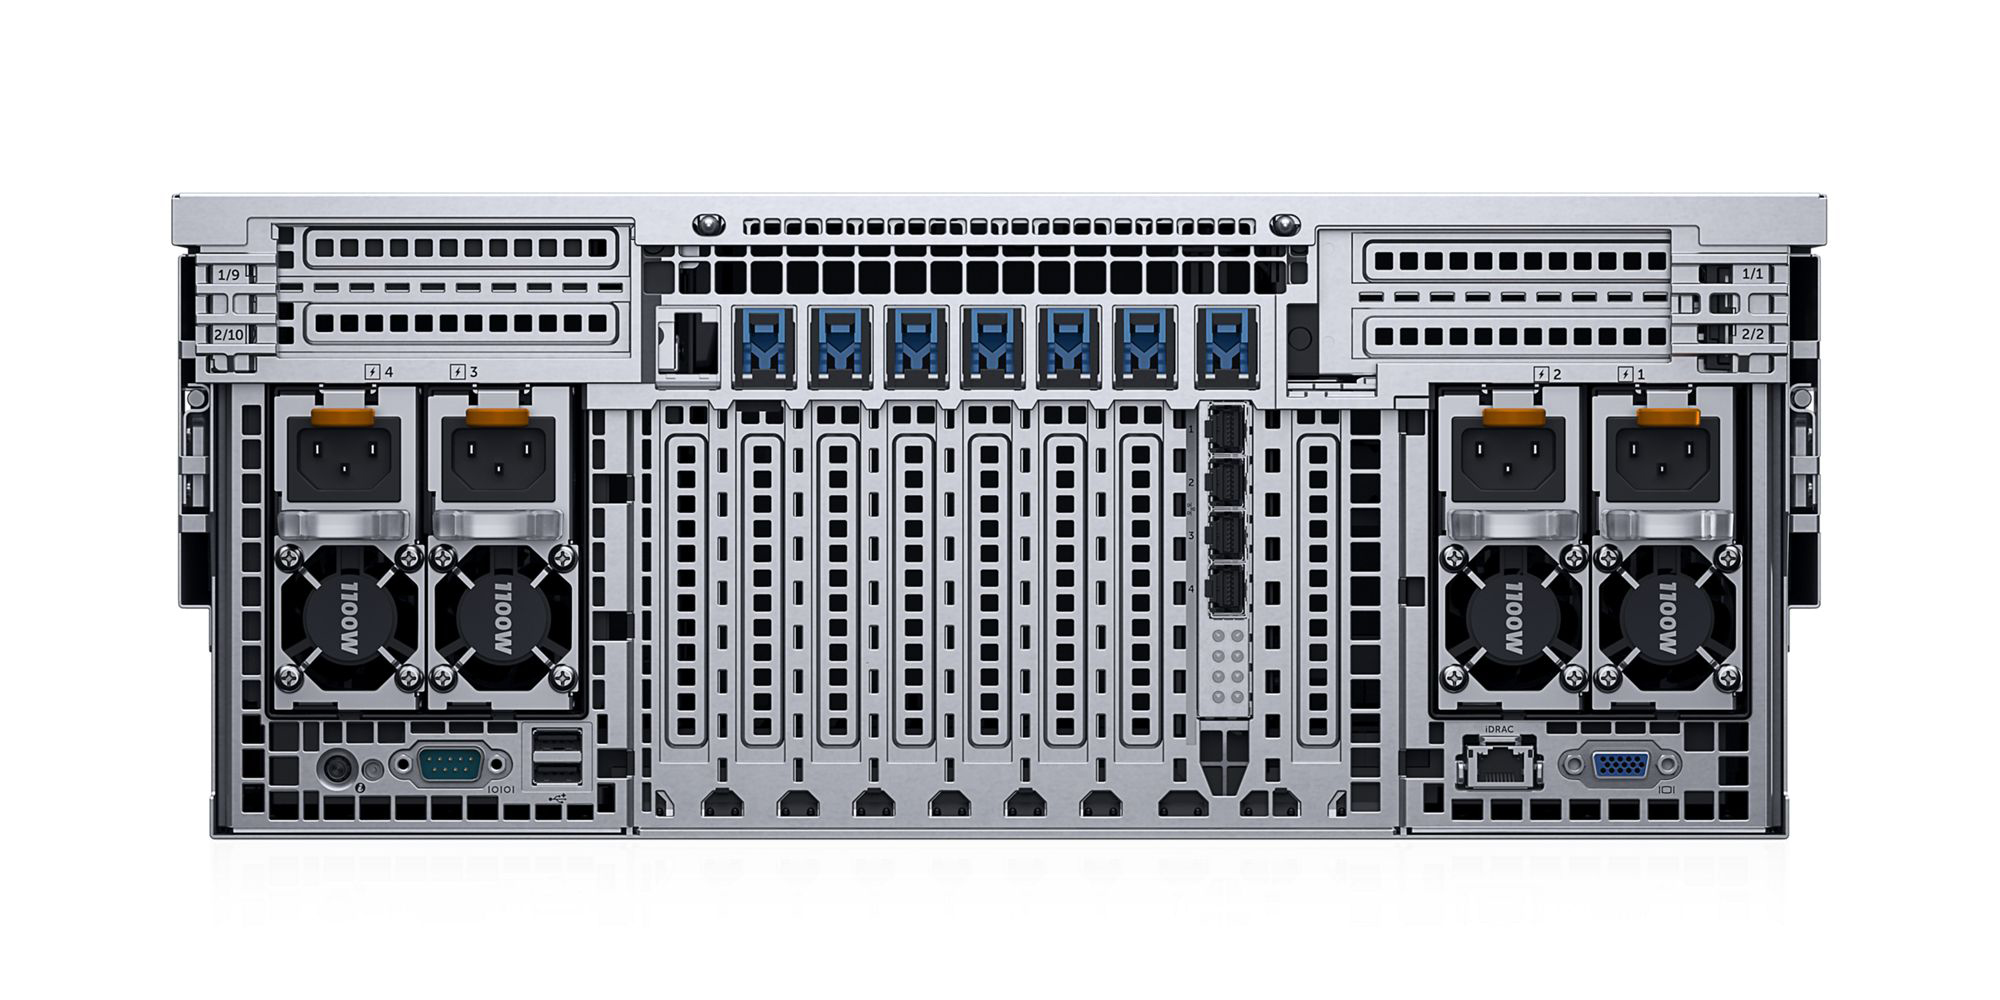 PowerEdge R930 Enterprise Server